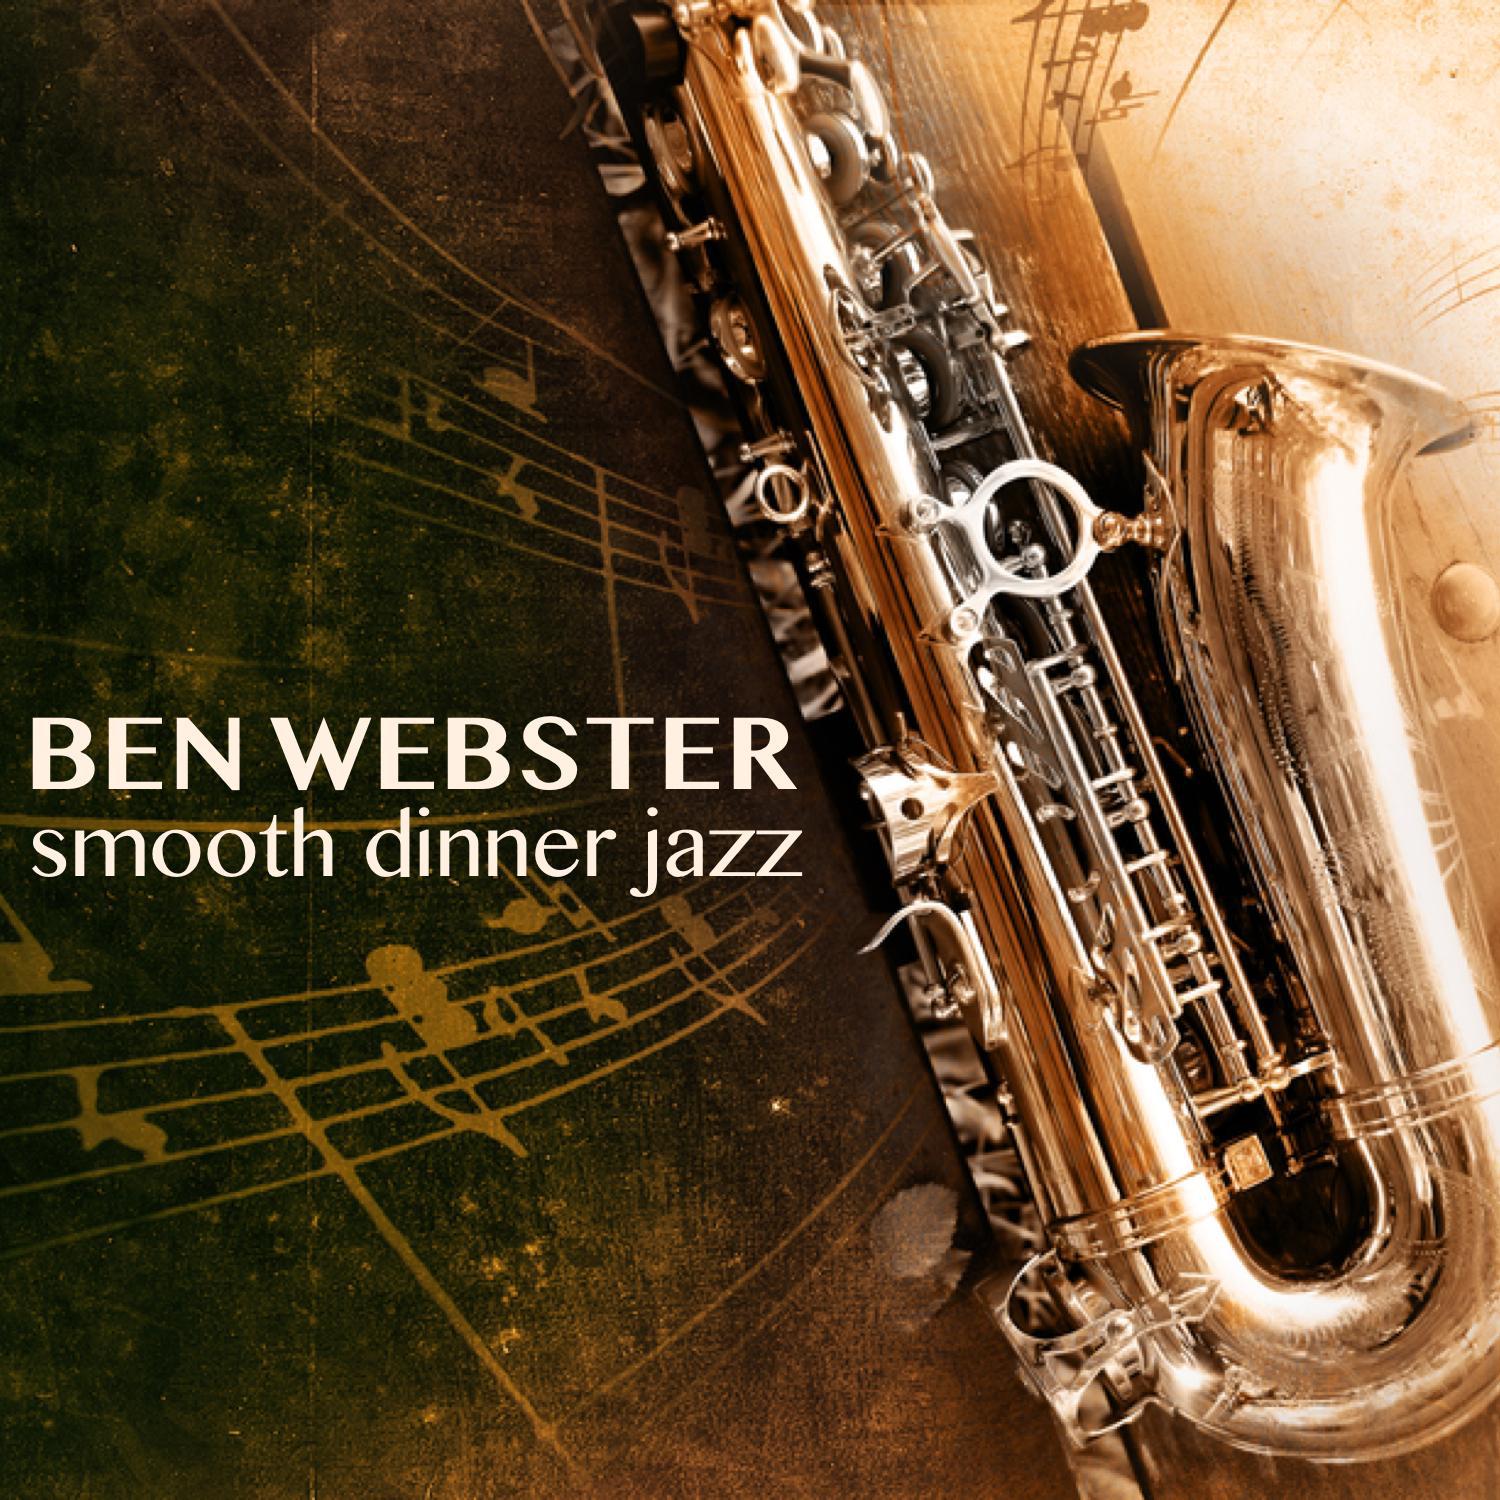 The Very Best of Ben Webster专辑